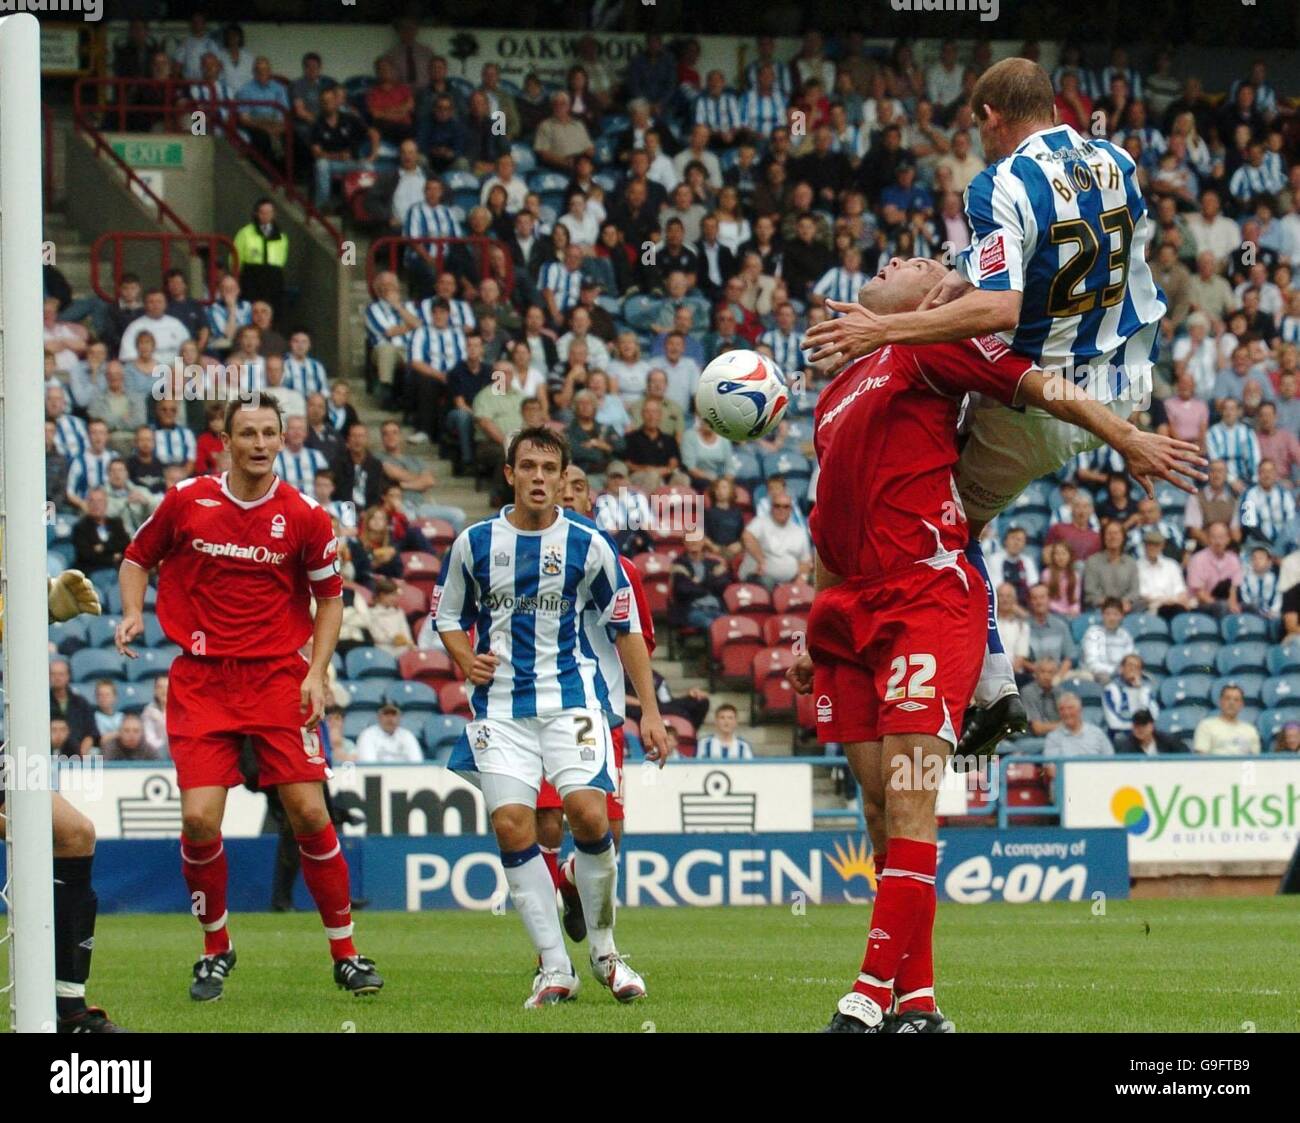 Andy Booth de Huddersfield (à droite) dirige le ballon, pour le faire sauver par Paul Smith de Nottingham Forest pendant le match de la Coca-Cola League One au stade de Galpharm, Huddersfield. Banque D'Images